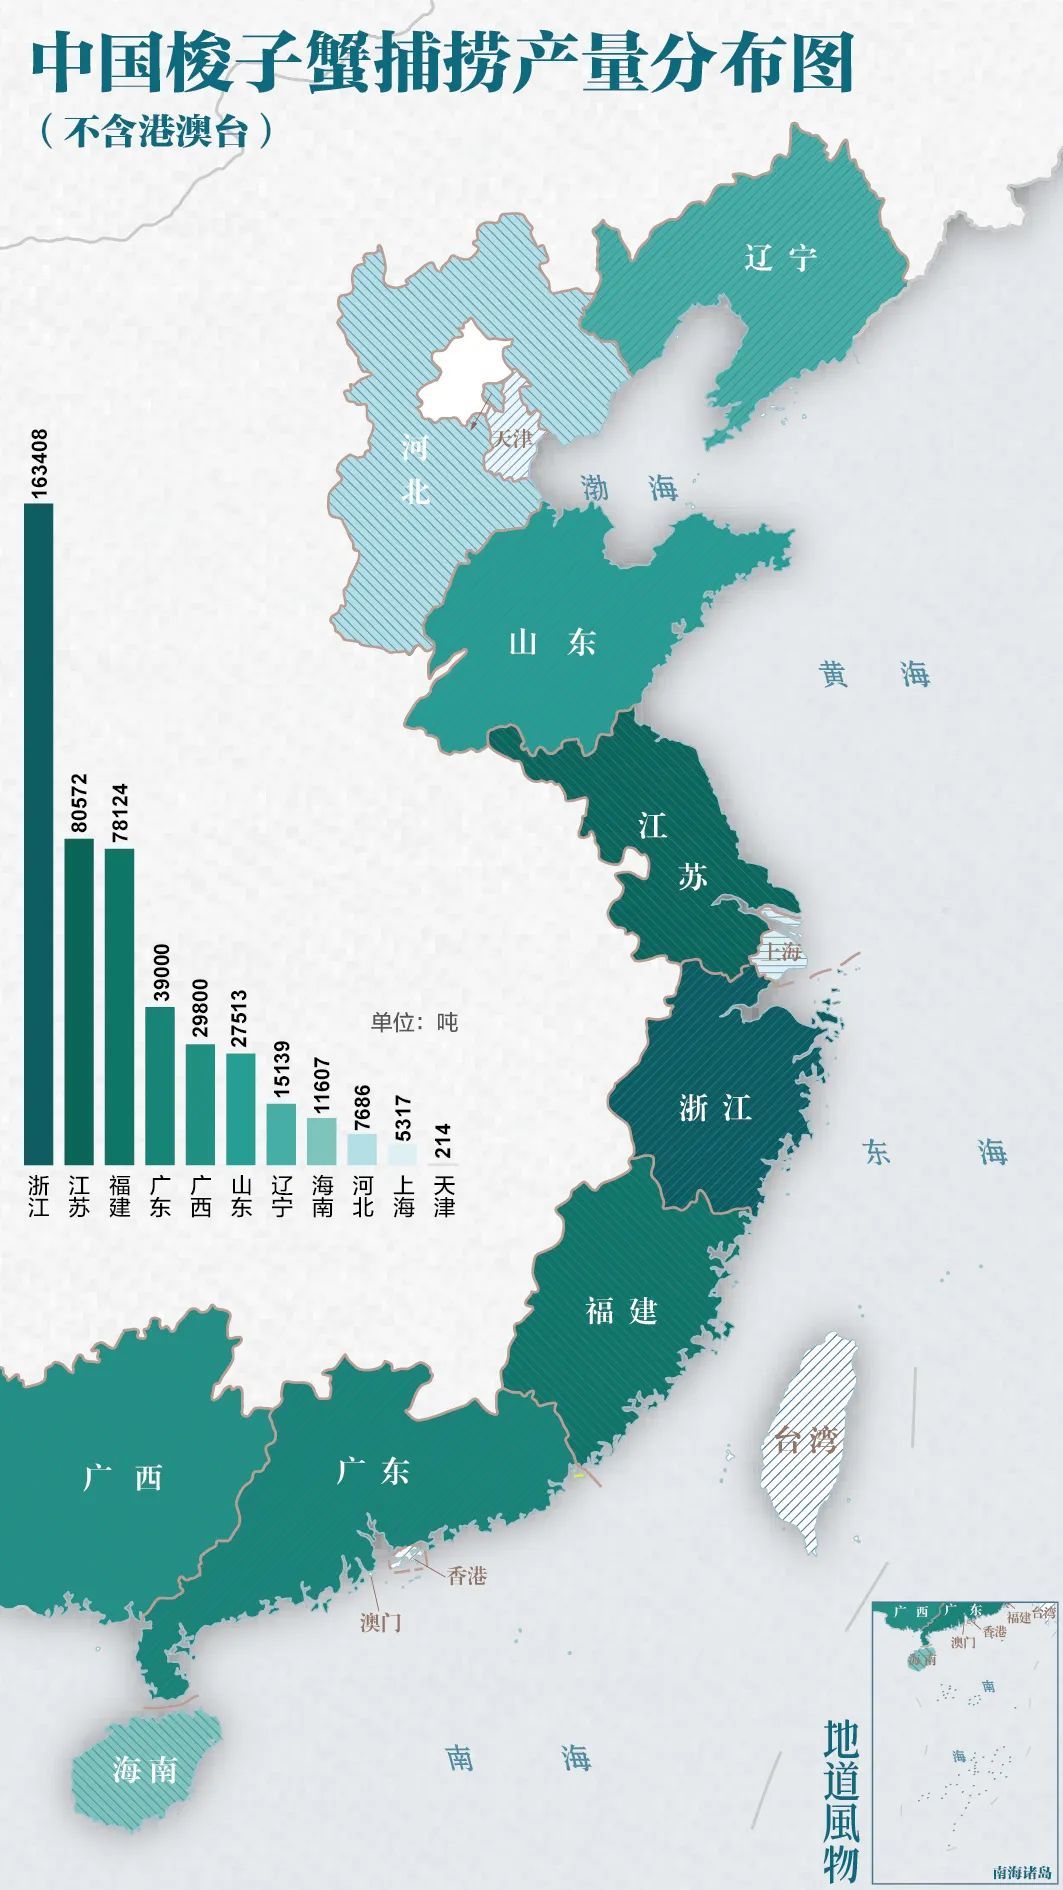 浙江占了中国梭子蟹产量的大头。制图/莫奈